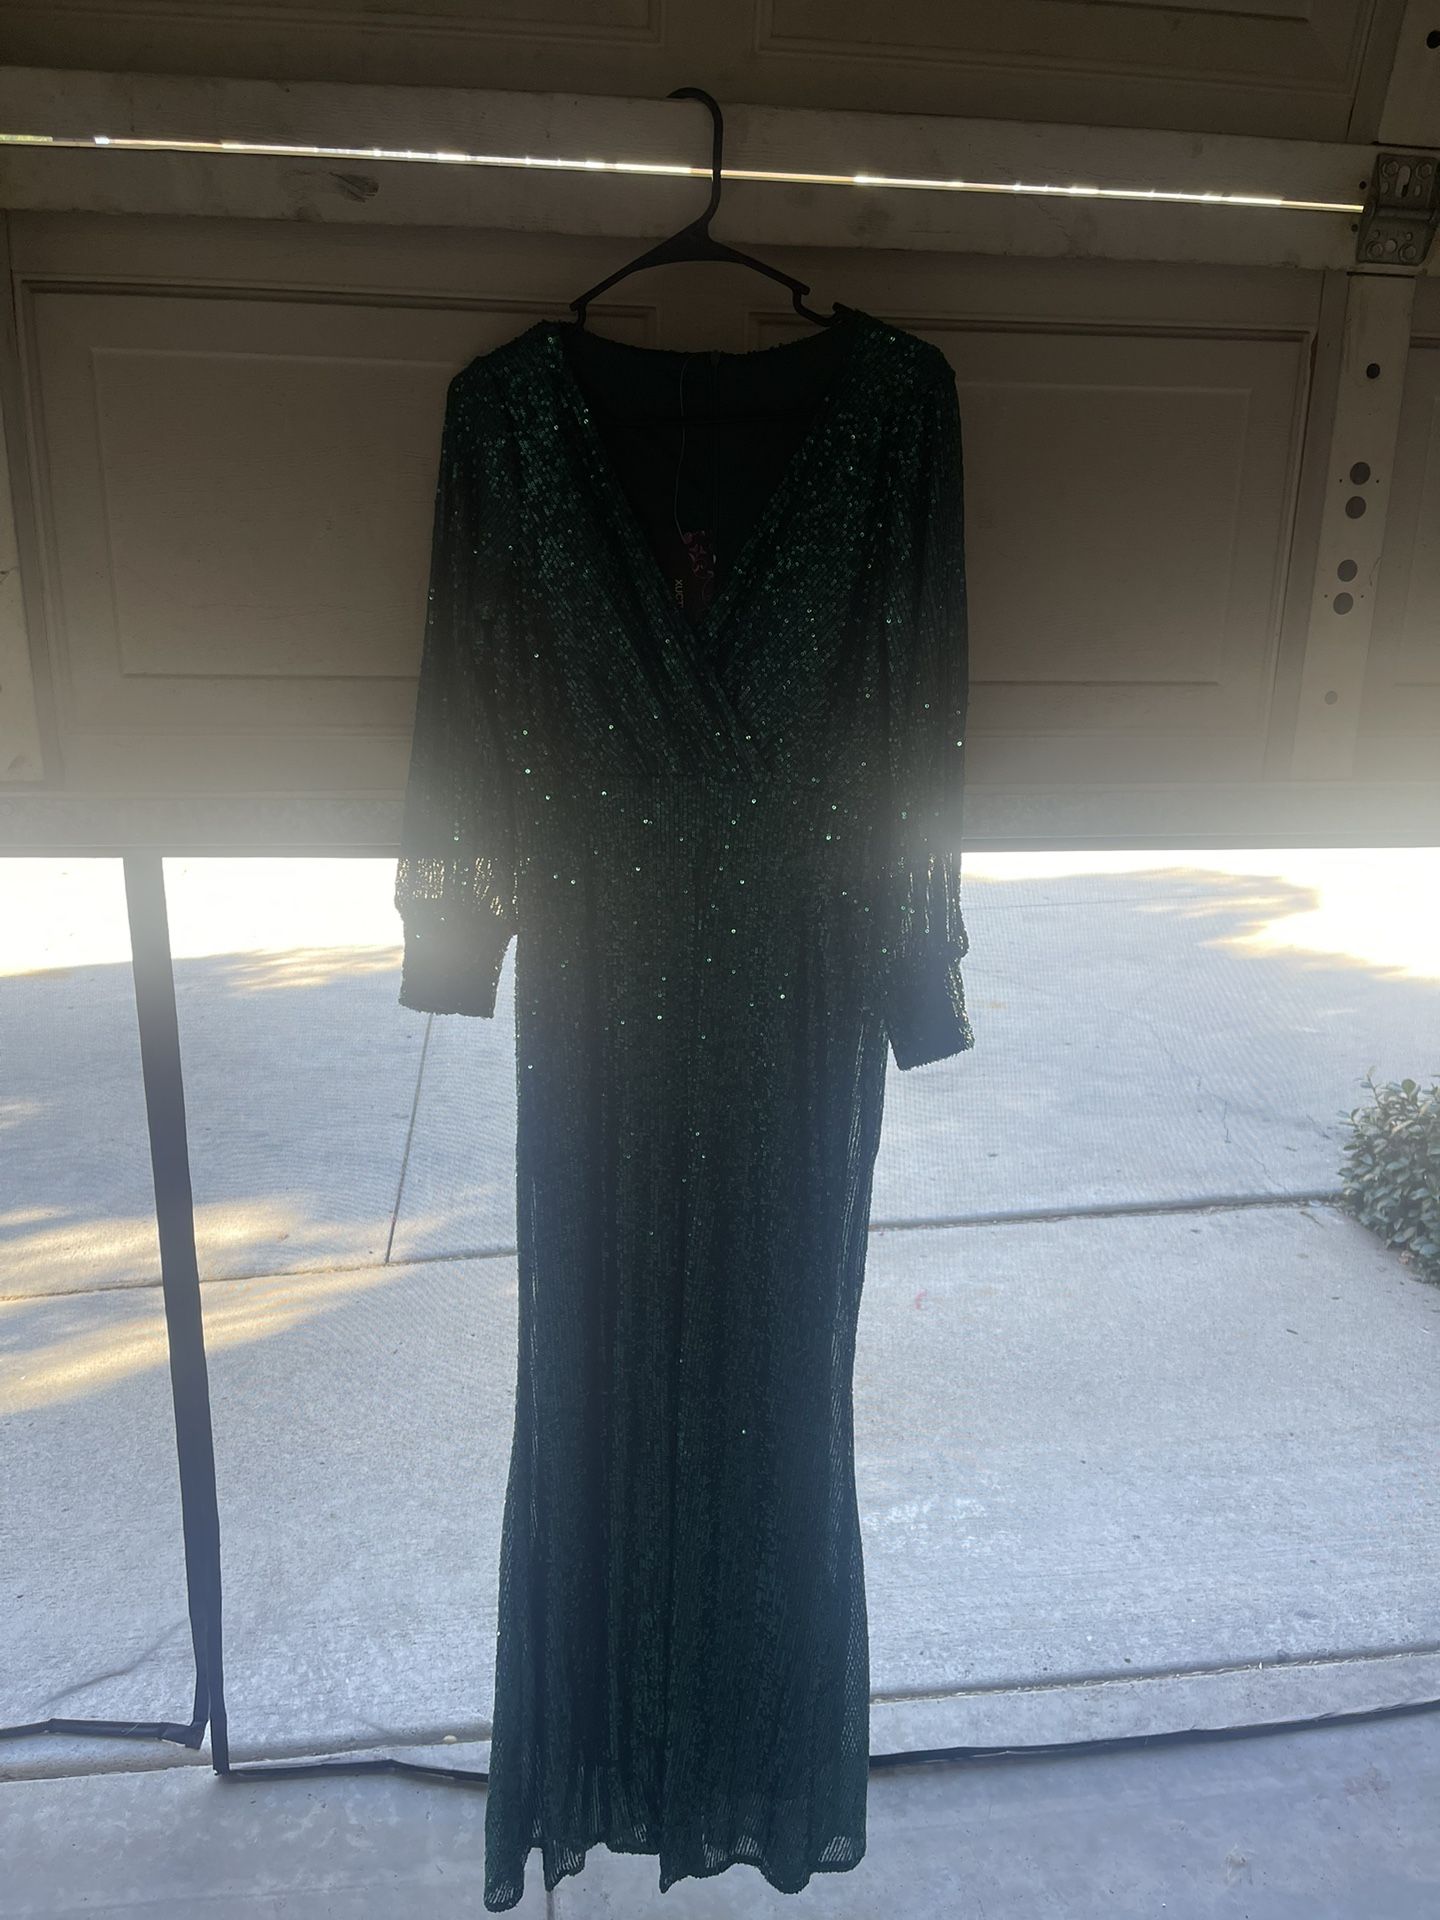 New Beautiful Dress Asking $65!!!obo